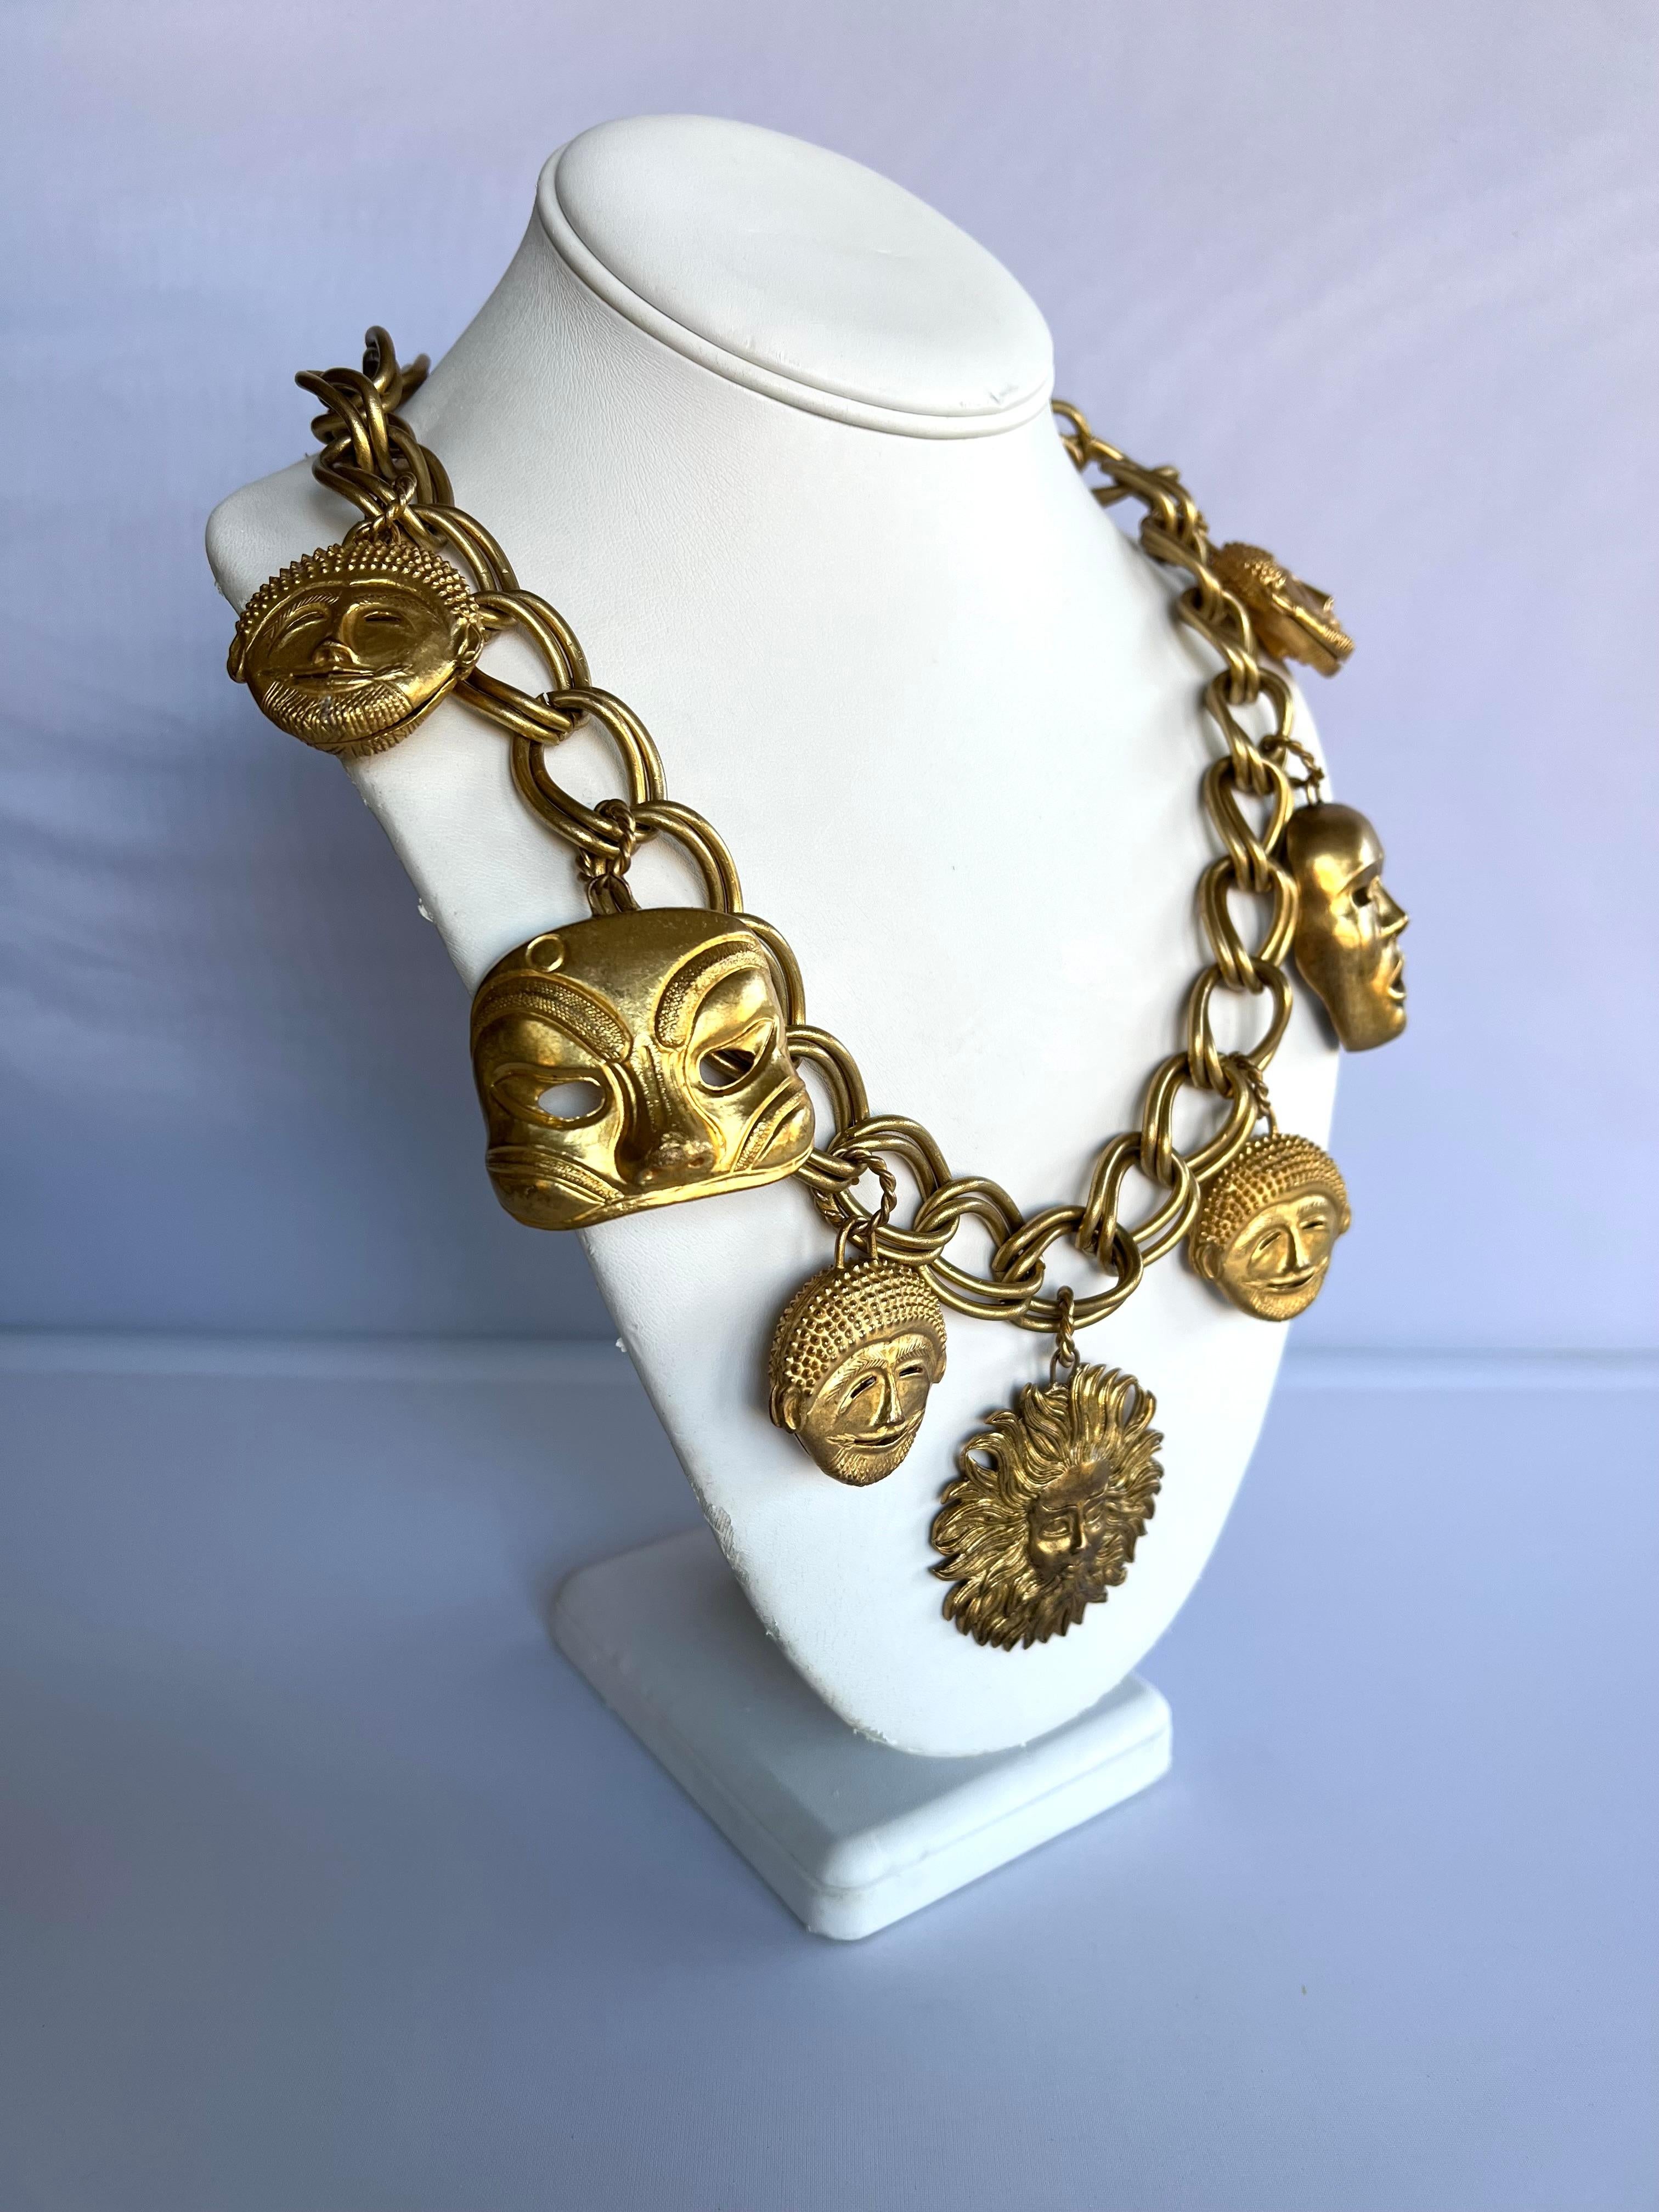 Seltene Vintage-Halskette von Isabel Canovas mit vergoldeten Metallketten und detaillierten Masken, hergestellt in Paris, Frankreich. 

Die passenden Ohrringe sind in einem separaten Angebot aufgeführt.